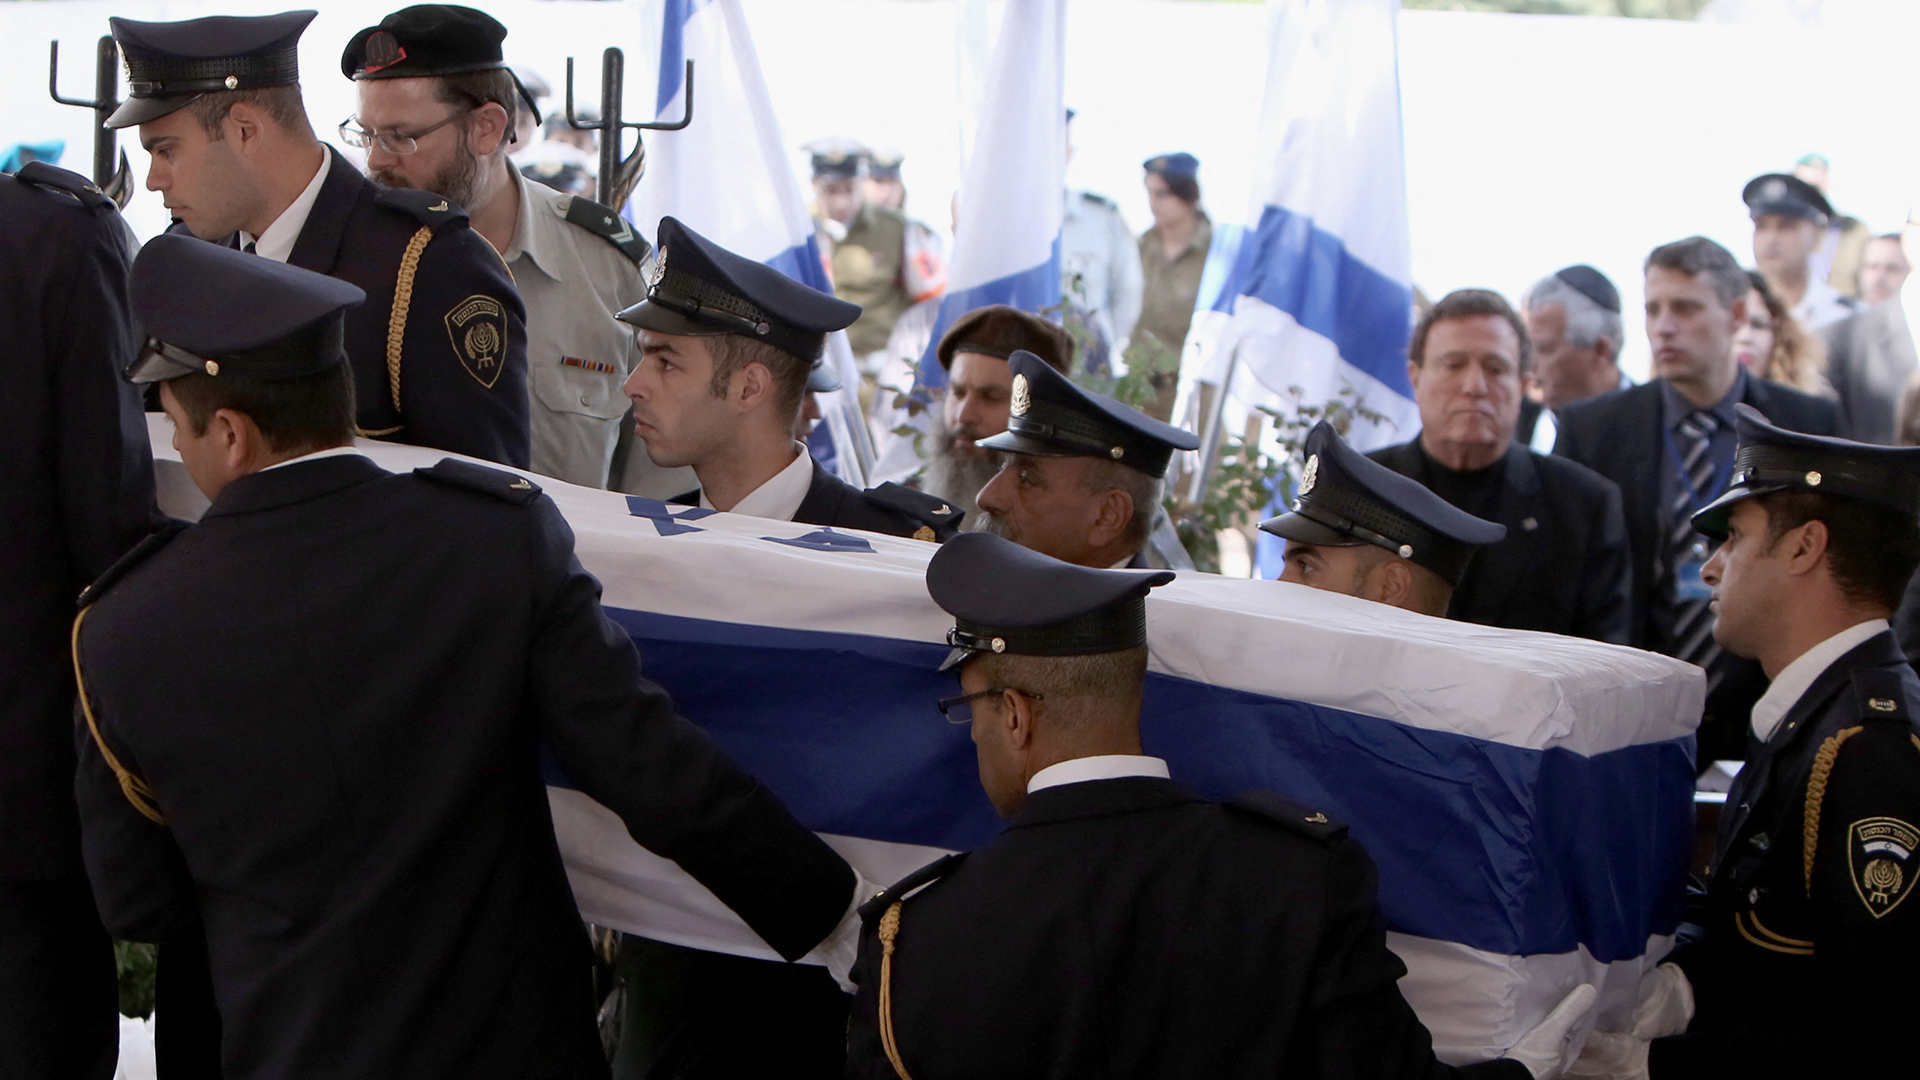 فوق السلطة – ضابط إسرائيلي: جنازة عسكرية كل 5 دقائق | أخرى – البوكس نيوز